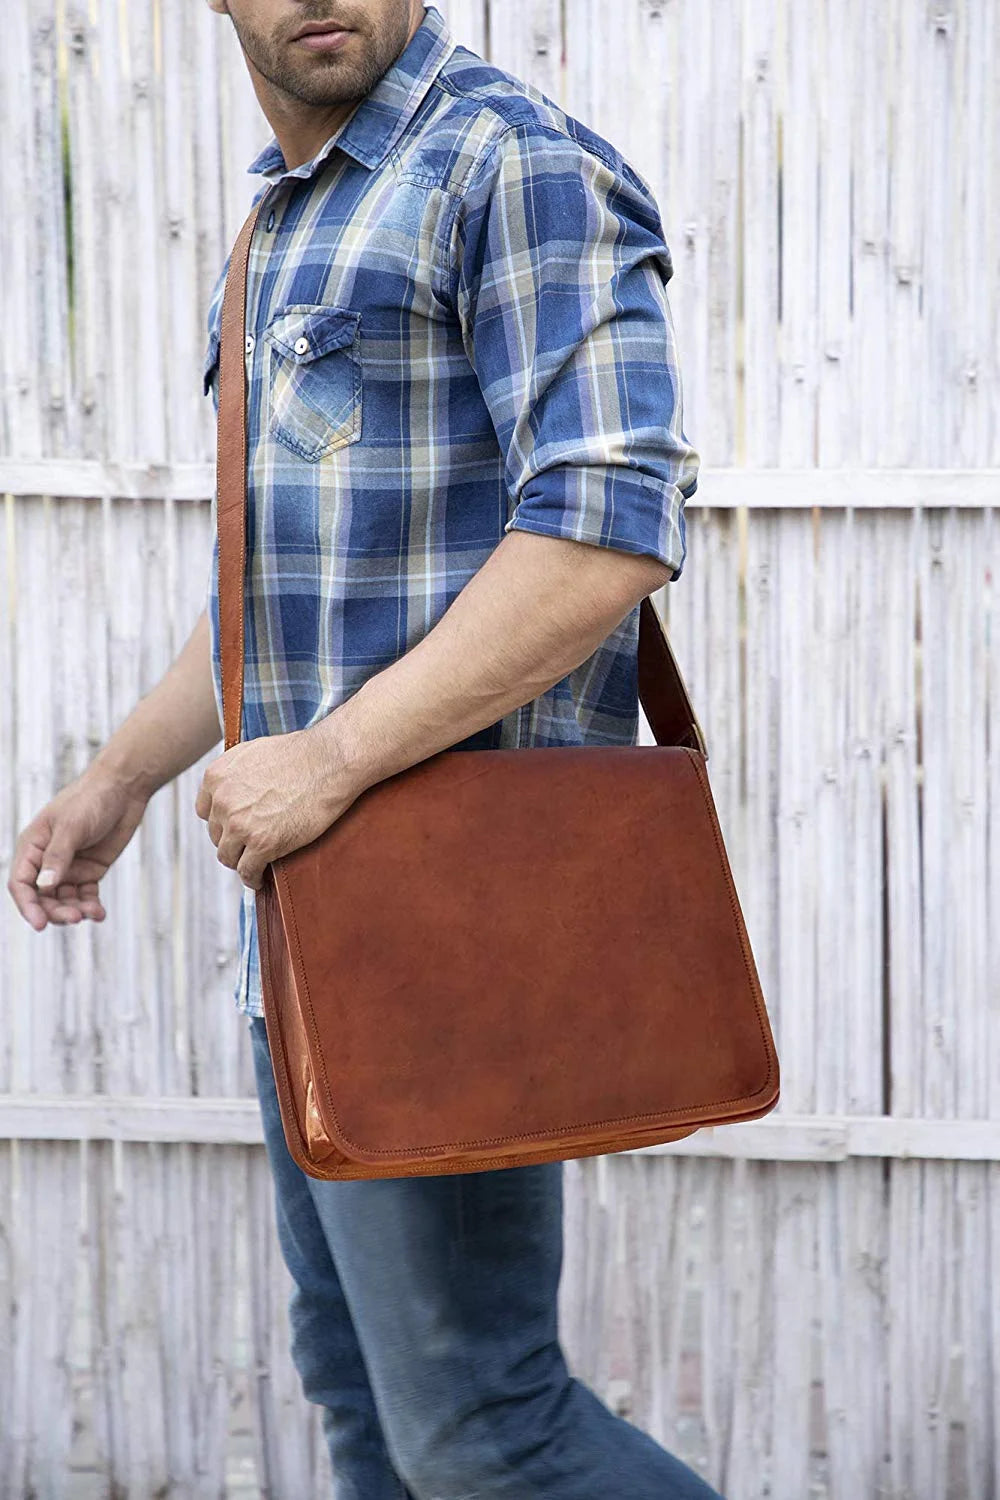 Lucien Satchel bag - Cuba Libre - Men's bag - Leather messenger bag - Made  in France